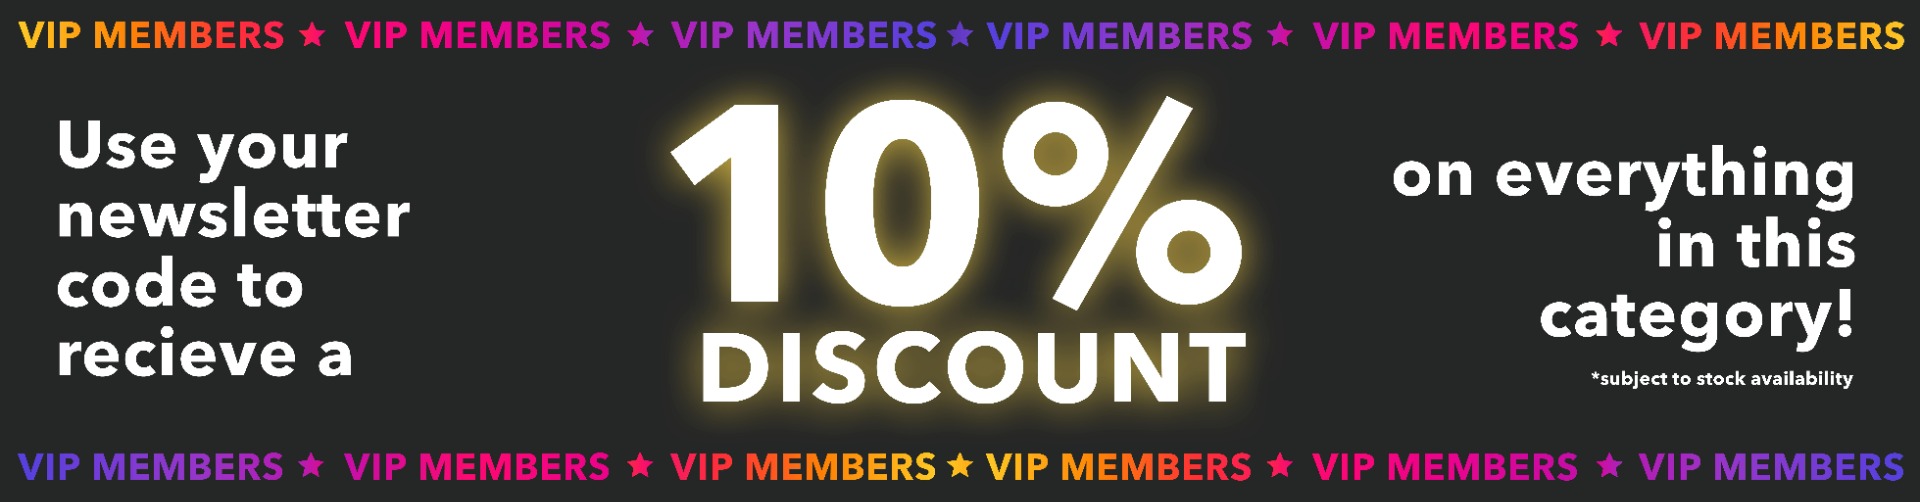 VIP member offers